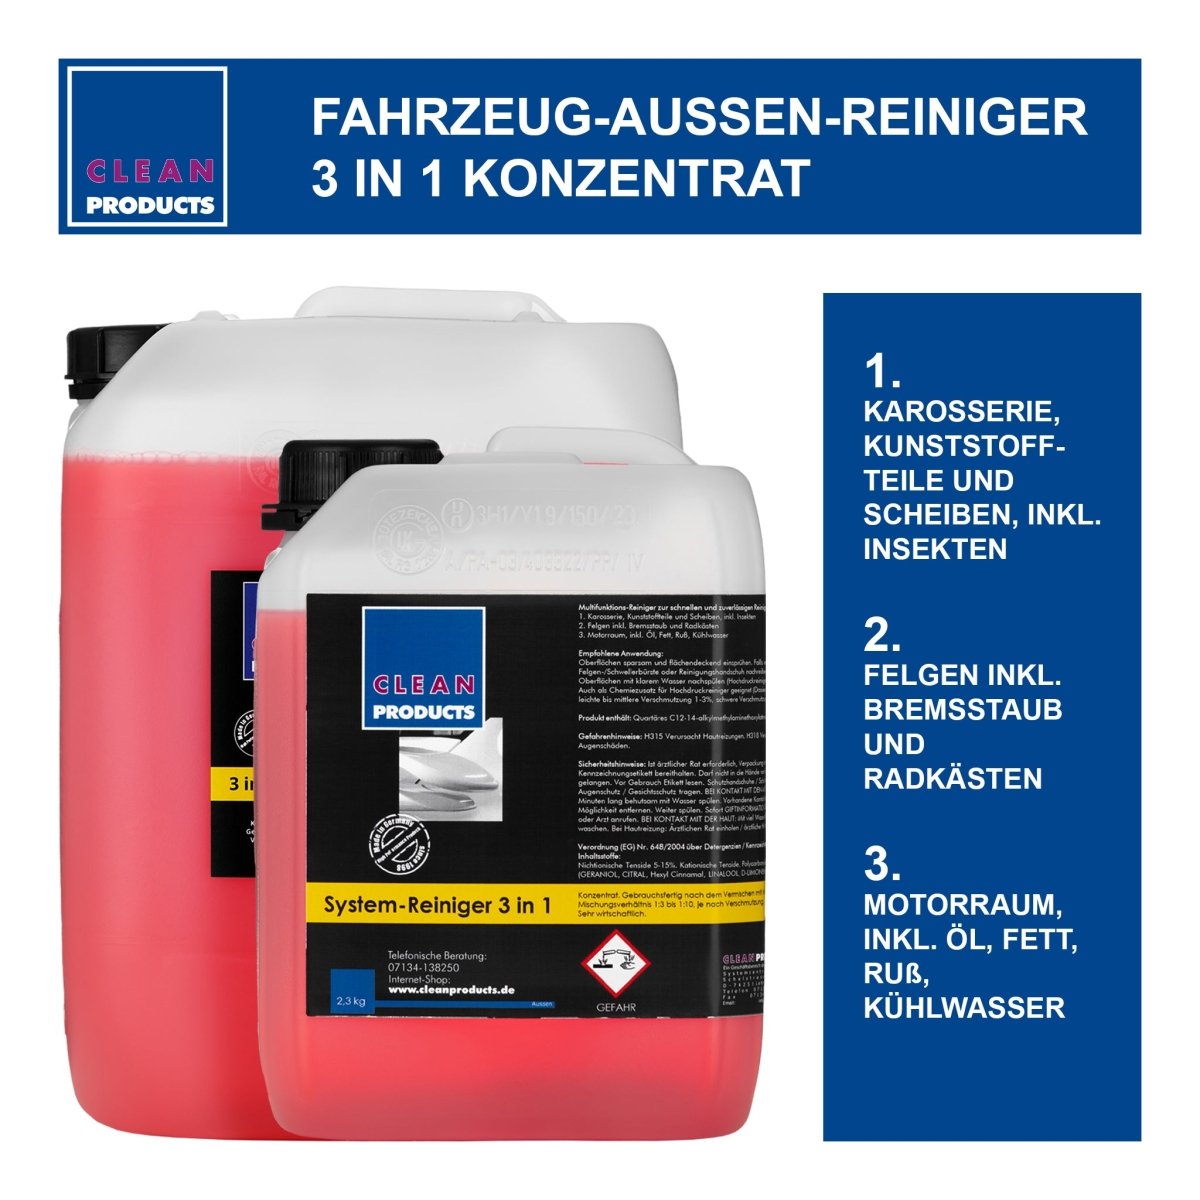 Set Fahrzeug-Außen-Reiniger 3 in 1 (10 kg Konzentrat) + Pumpsprühflasche Profi A 1,4 Liter (Düse verstellbar) - CLEANPRODUCTS